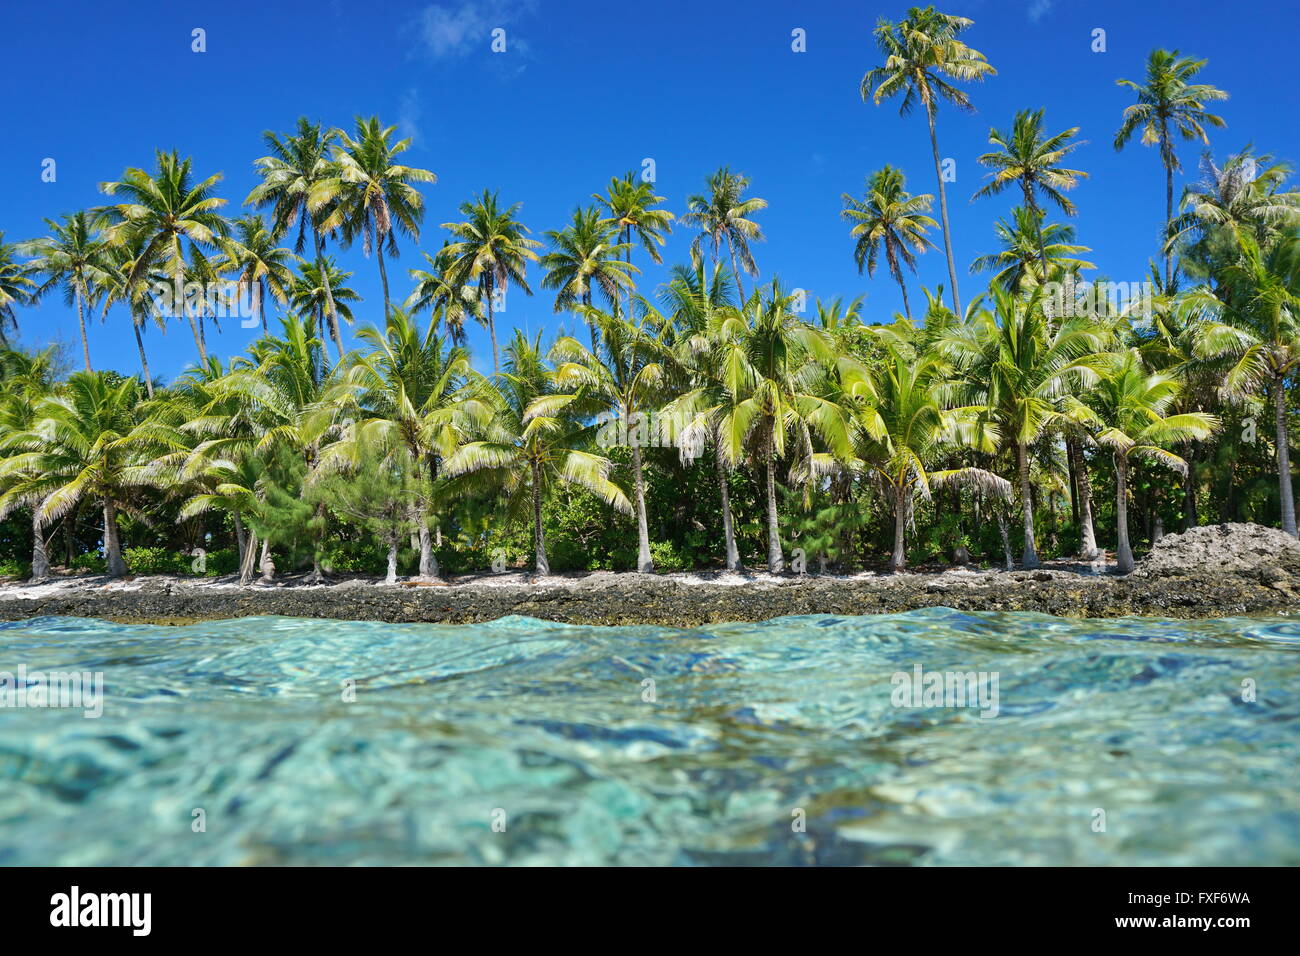 Incontaminata costa tropicale con palme da cocco visto dalla superficie dell'acqua, Huahine isola, oceano pacifico, Polinesia Francese Foto Stock